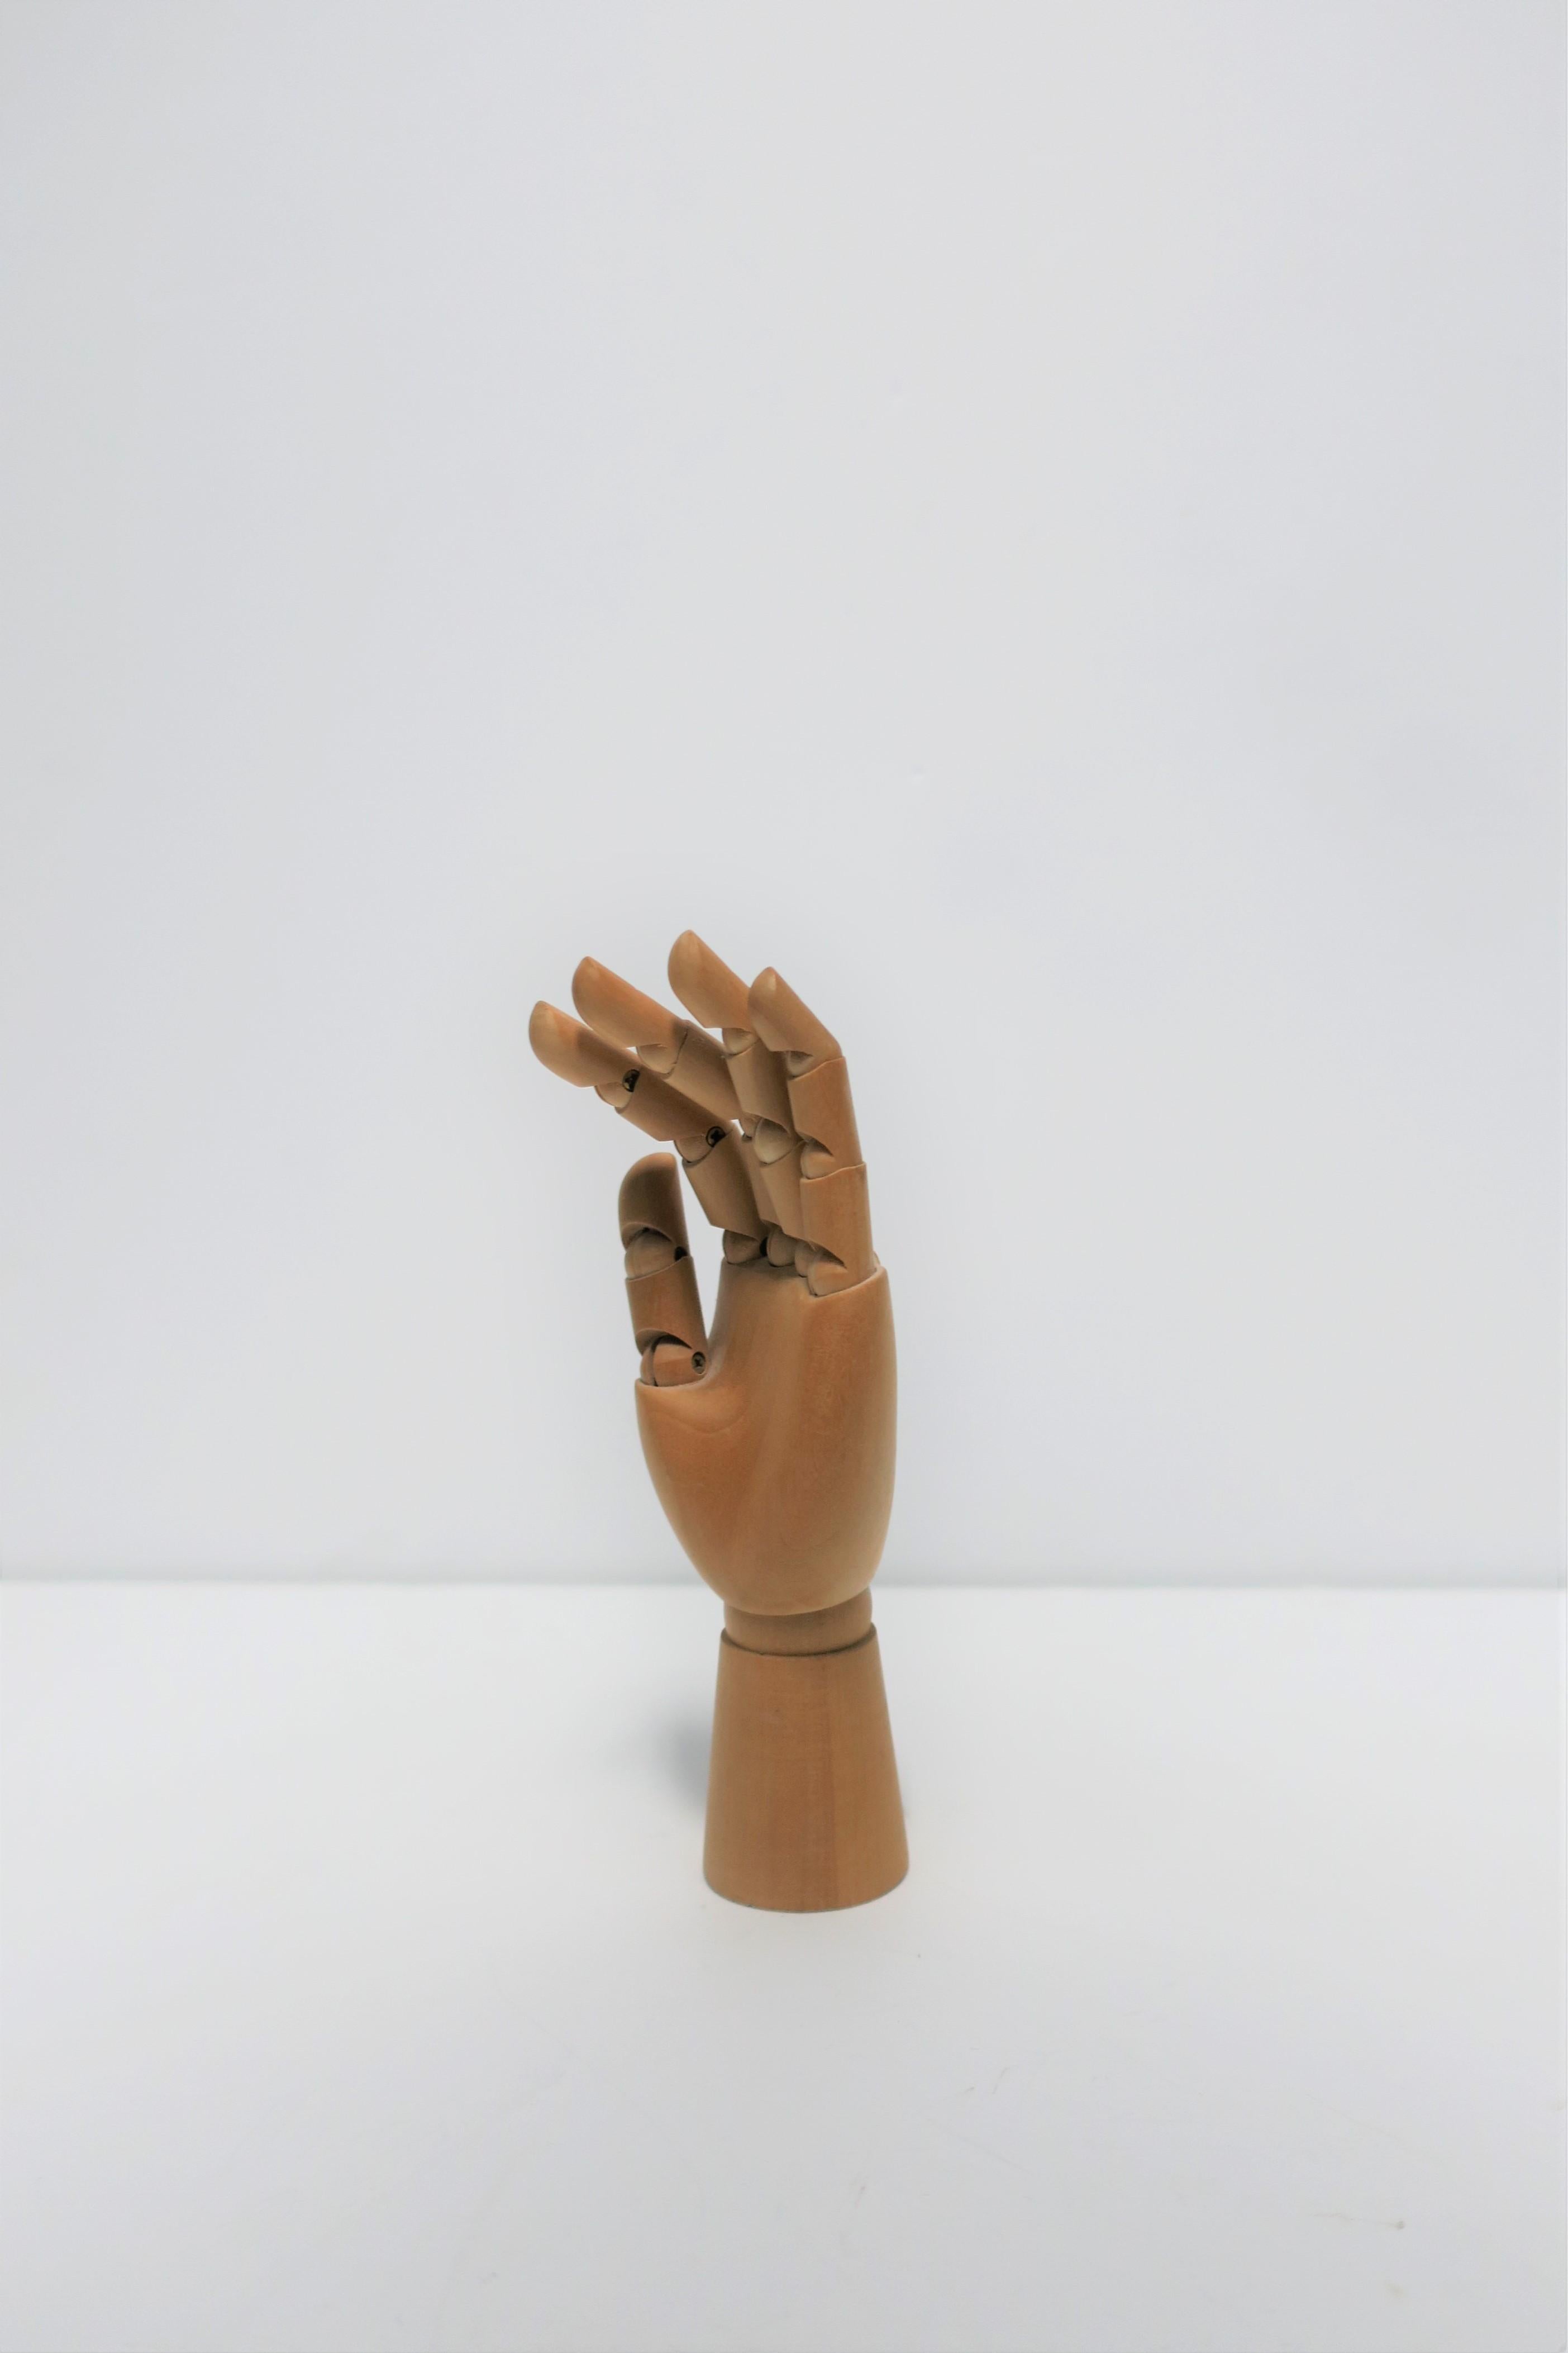 Articulating Wood Hand Sculpture Piece 8